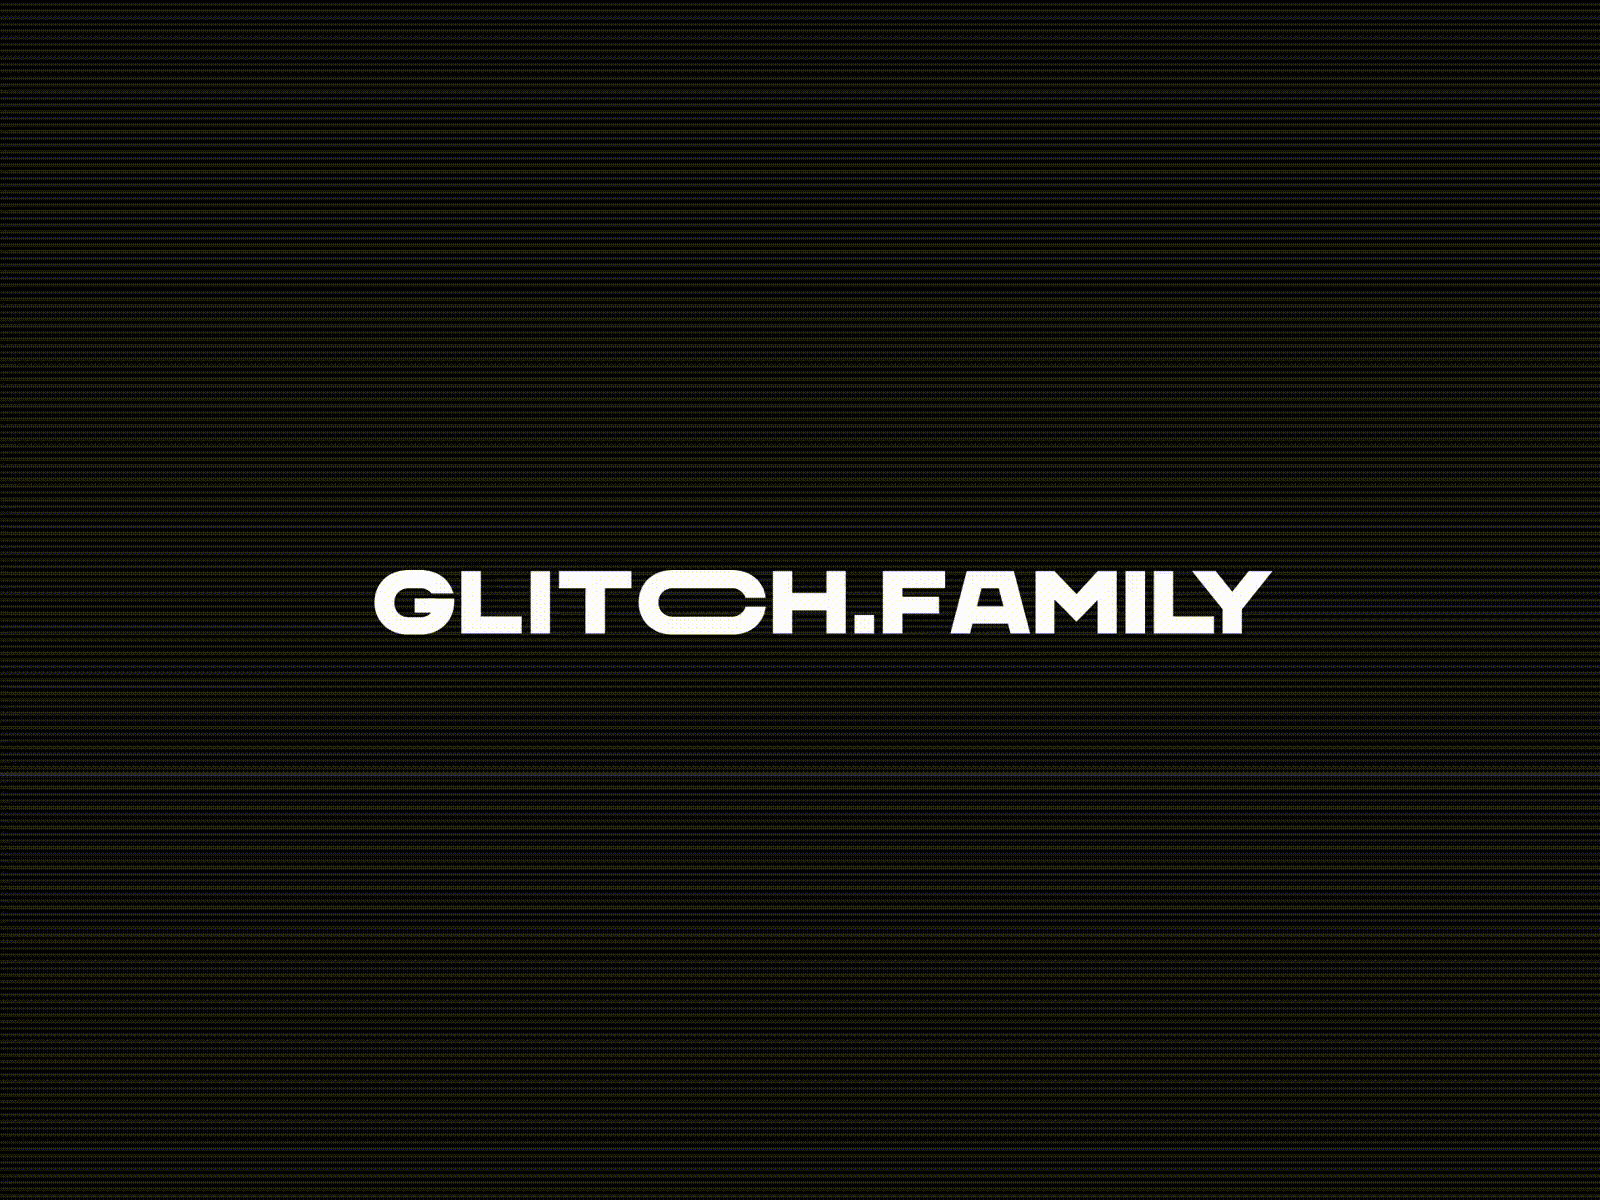 Glitch.Family Animated Logo glitch glitch.family logo